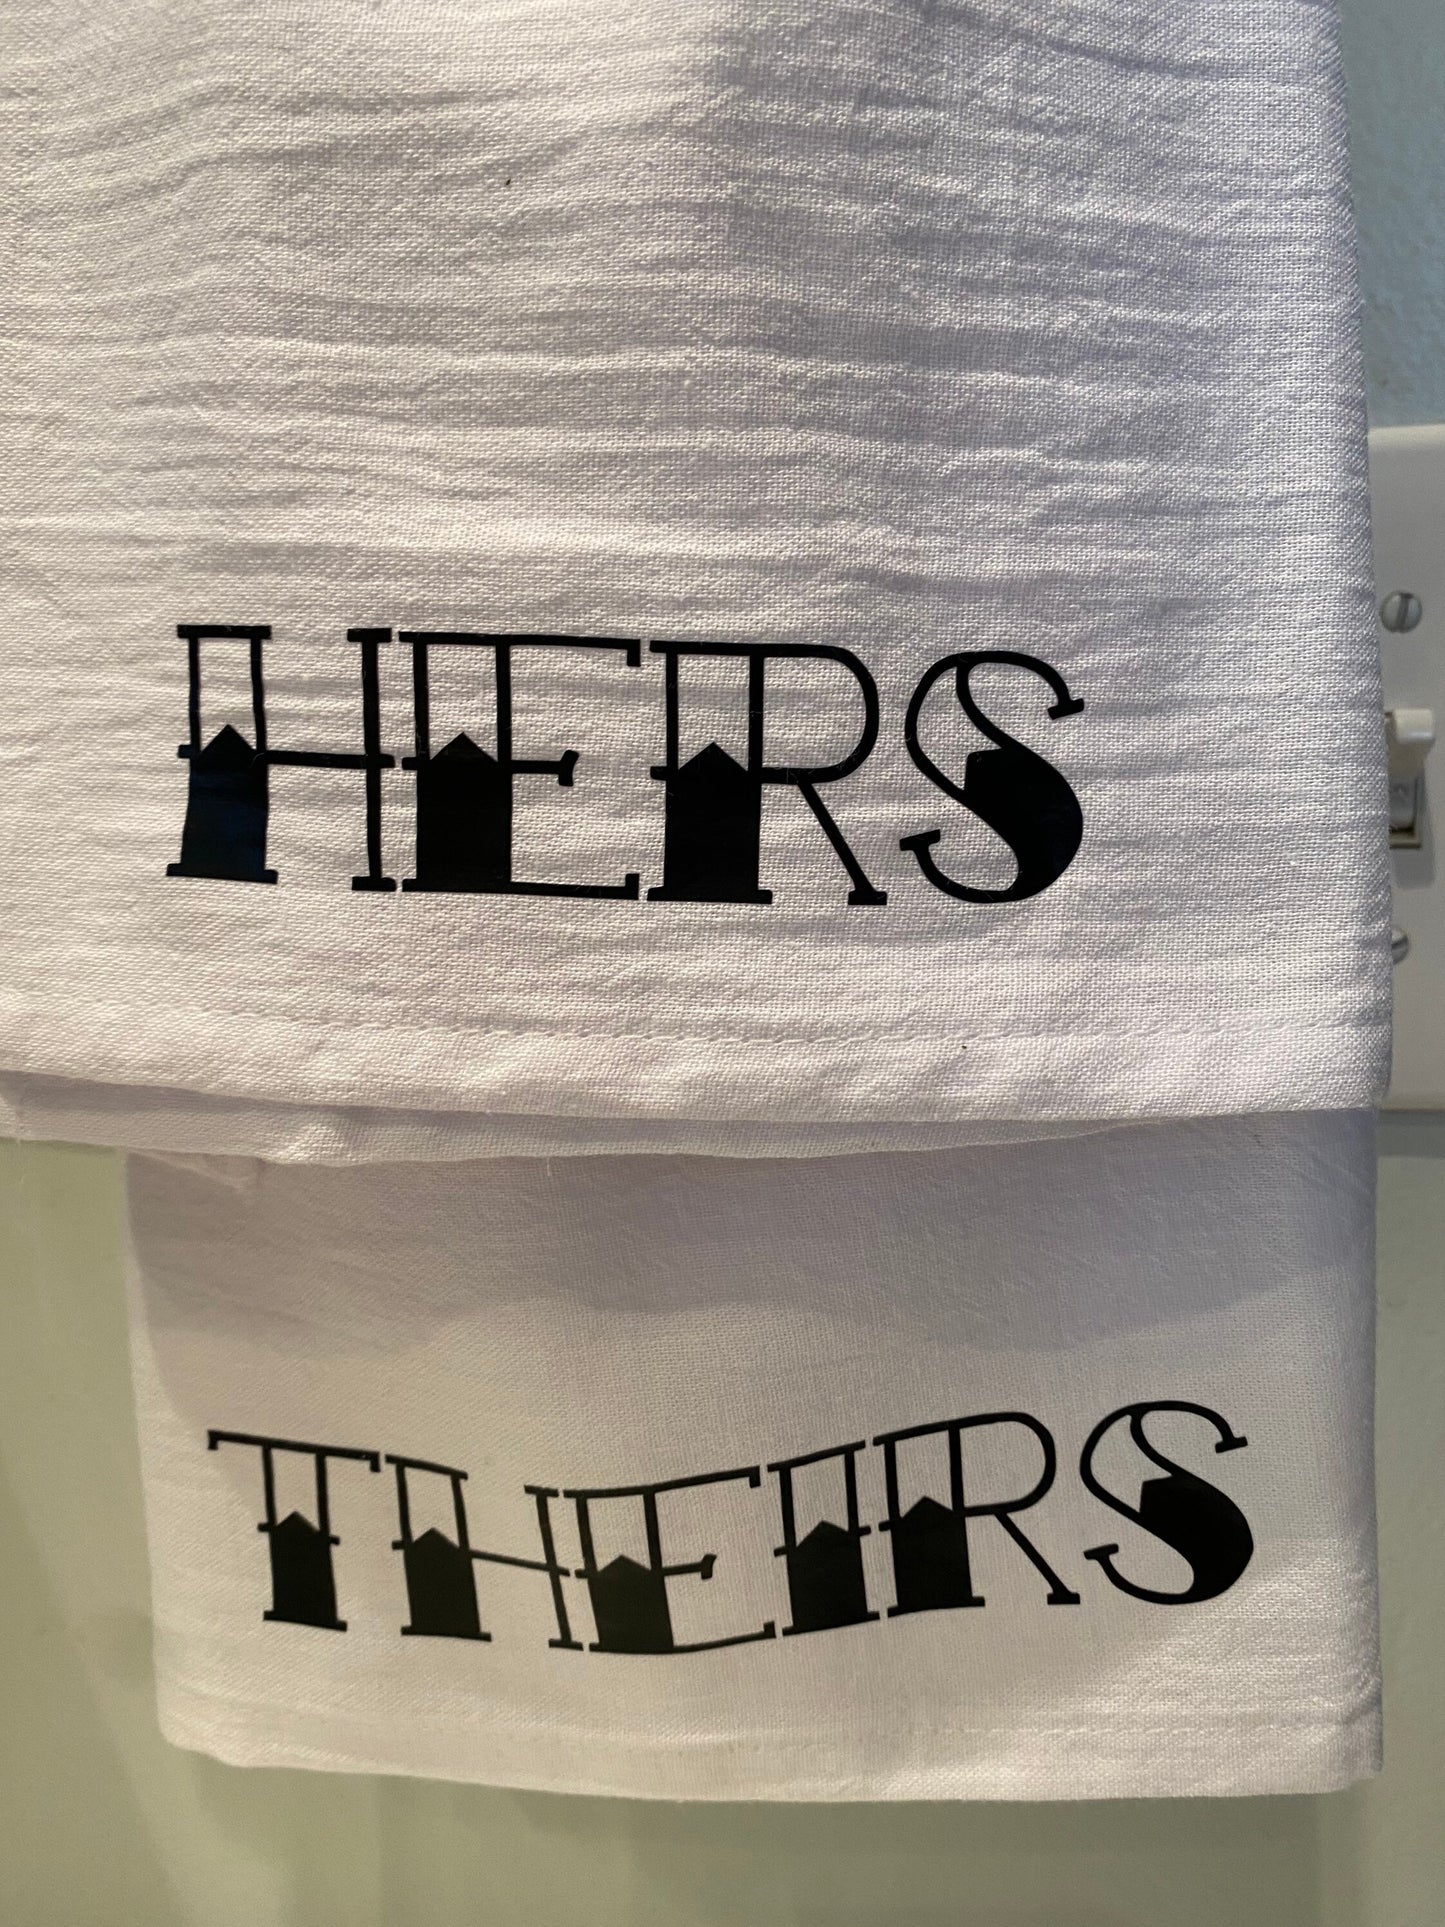 Pronoun Towel Set